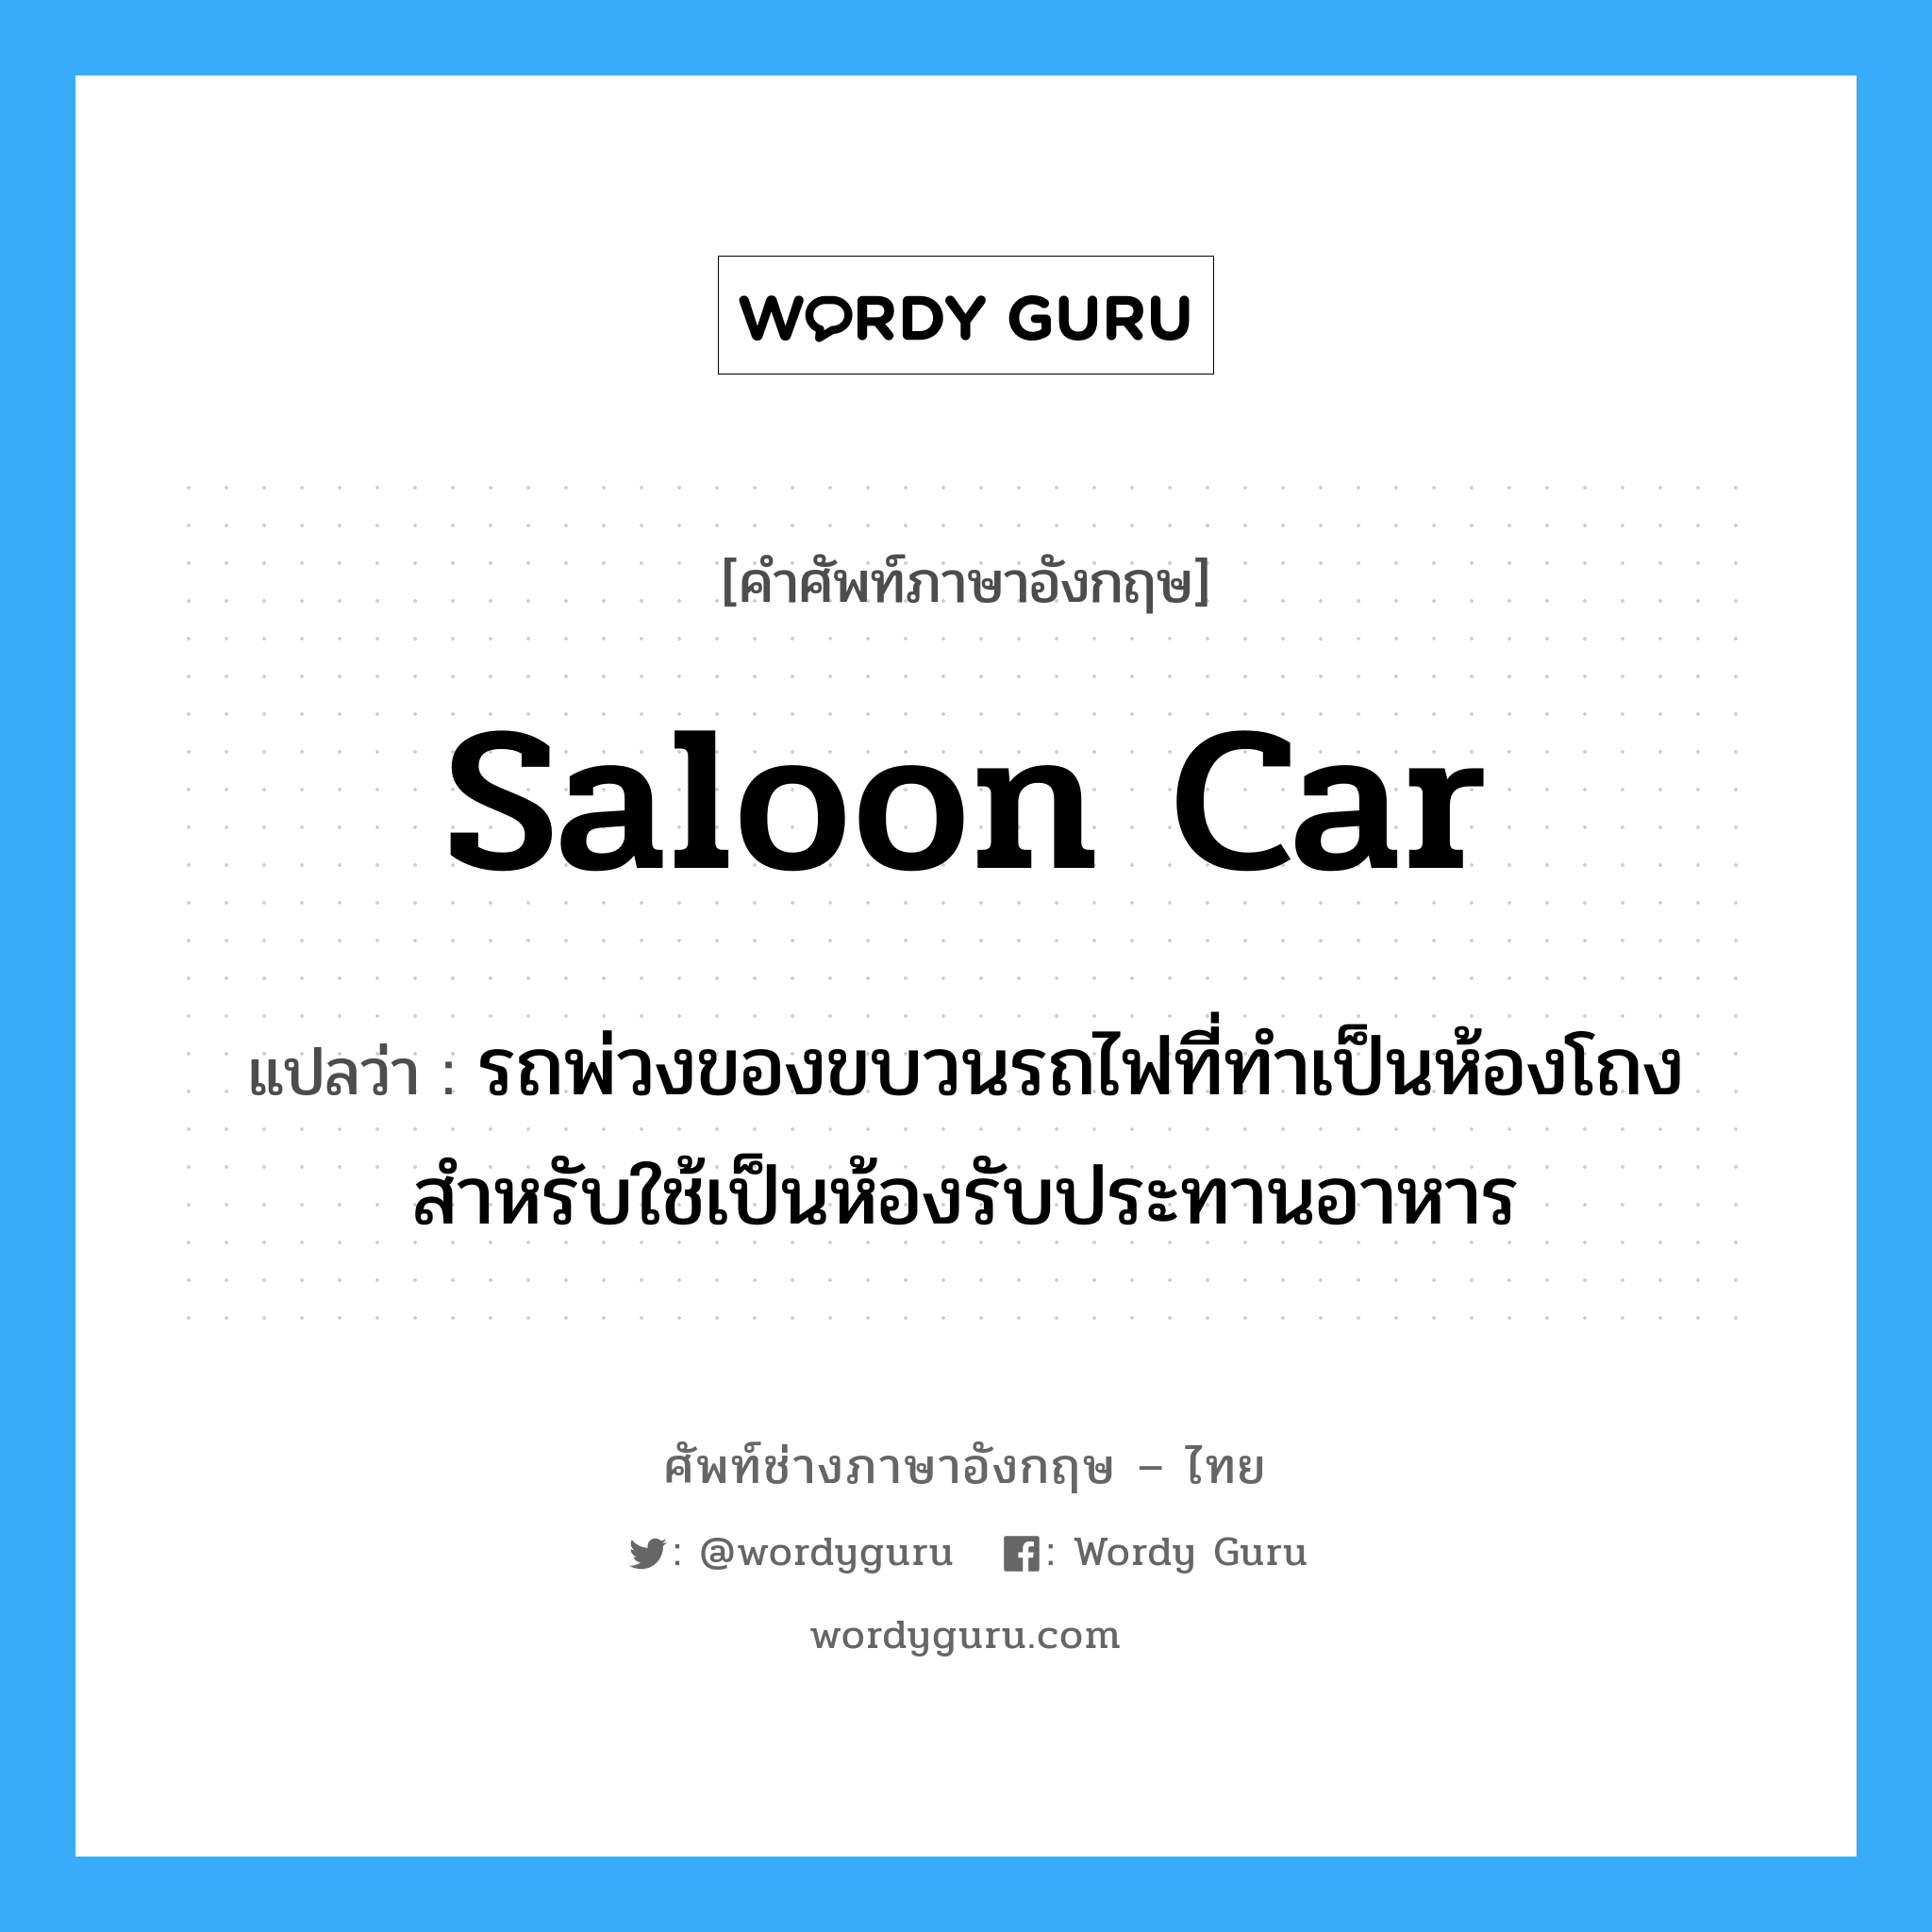 saloon car แปลว่า?, คำศัพท์ช่างภาษาอังกฤษ - ไทย saloon car คำศัพท์ภาษาอังกฤษ saloon car แปลว่า รถพ่วงของขบวนรถไฟที่ทำเป็นห้องโถงสำหรับใช้เป็นห้องรับประทานอาหาร